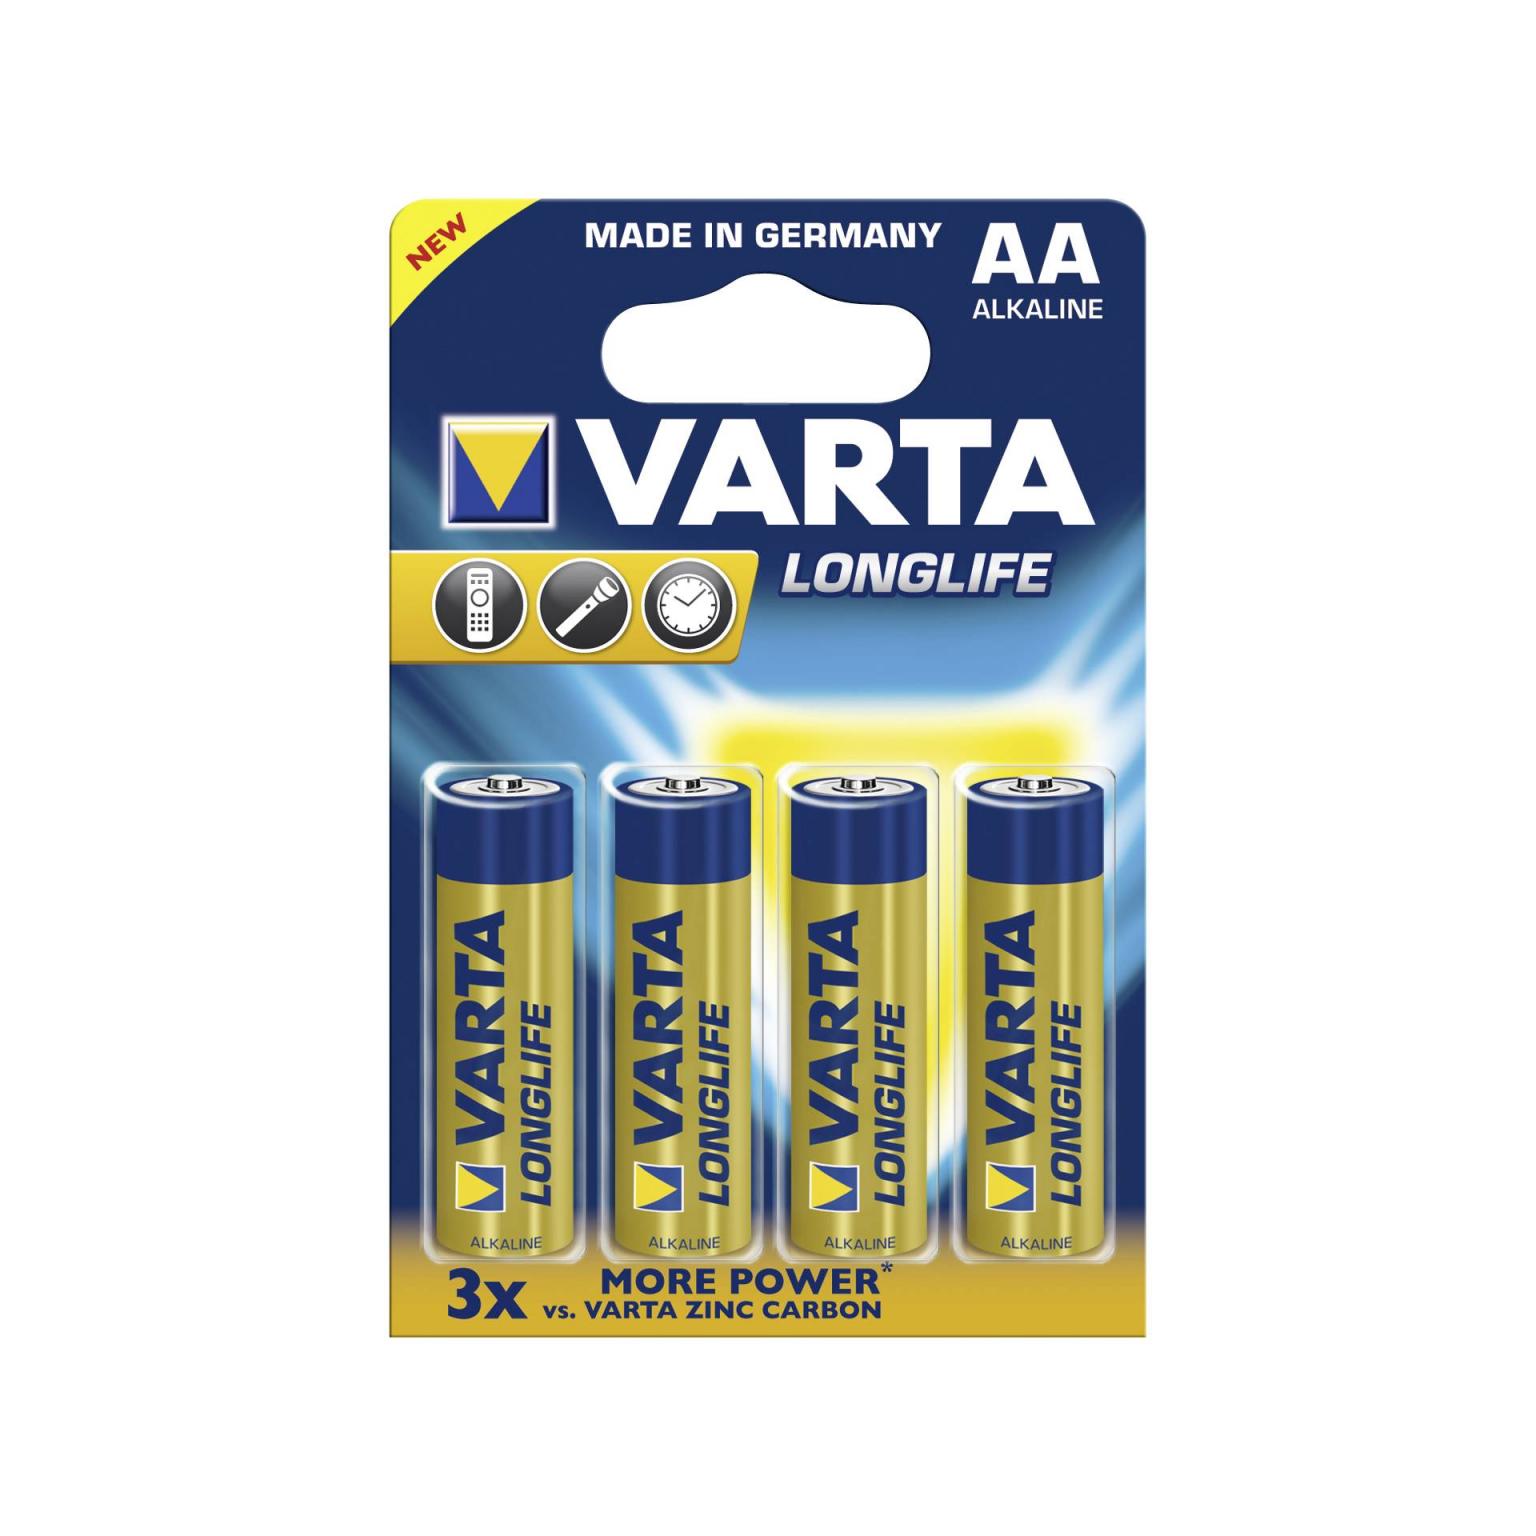 20x4 Varta Longlife Extra Mignon AA LR 6 VPE binnenverpakking - Varta